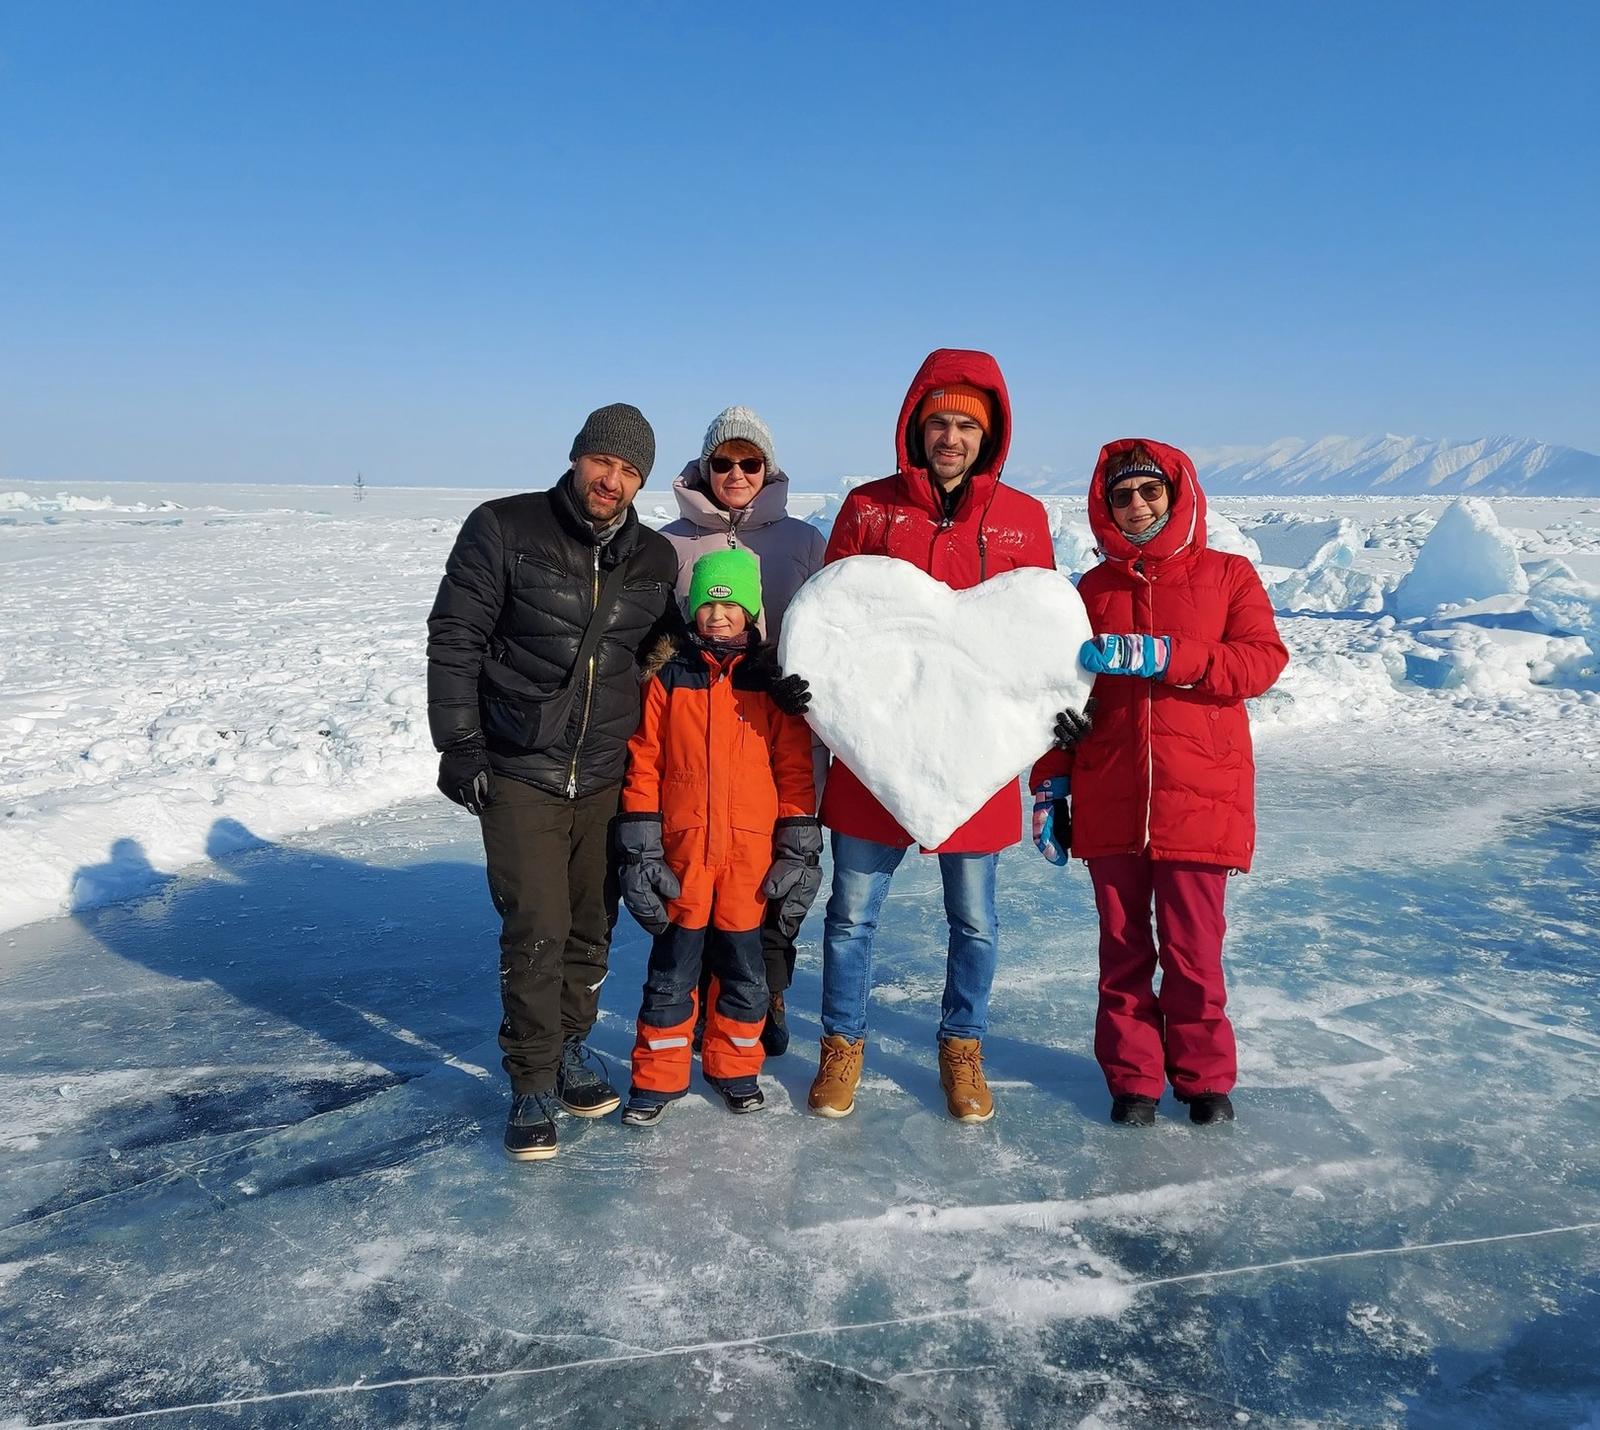 Байкальский лед! 19-25 февраля! Программа успешно проведена